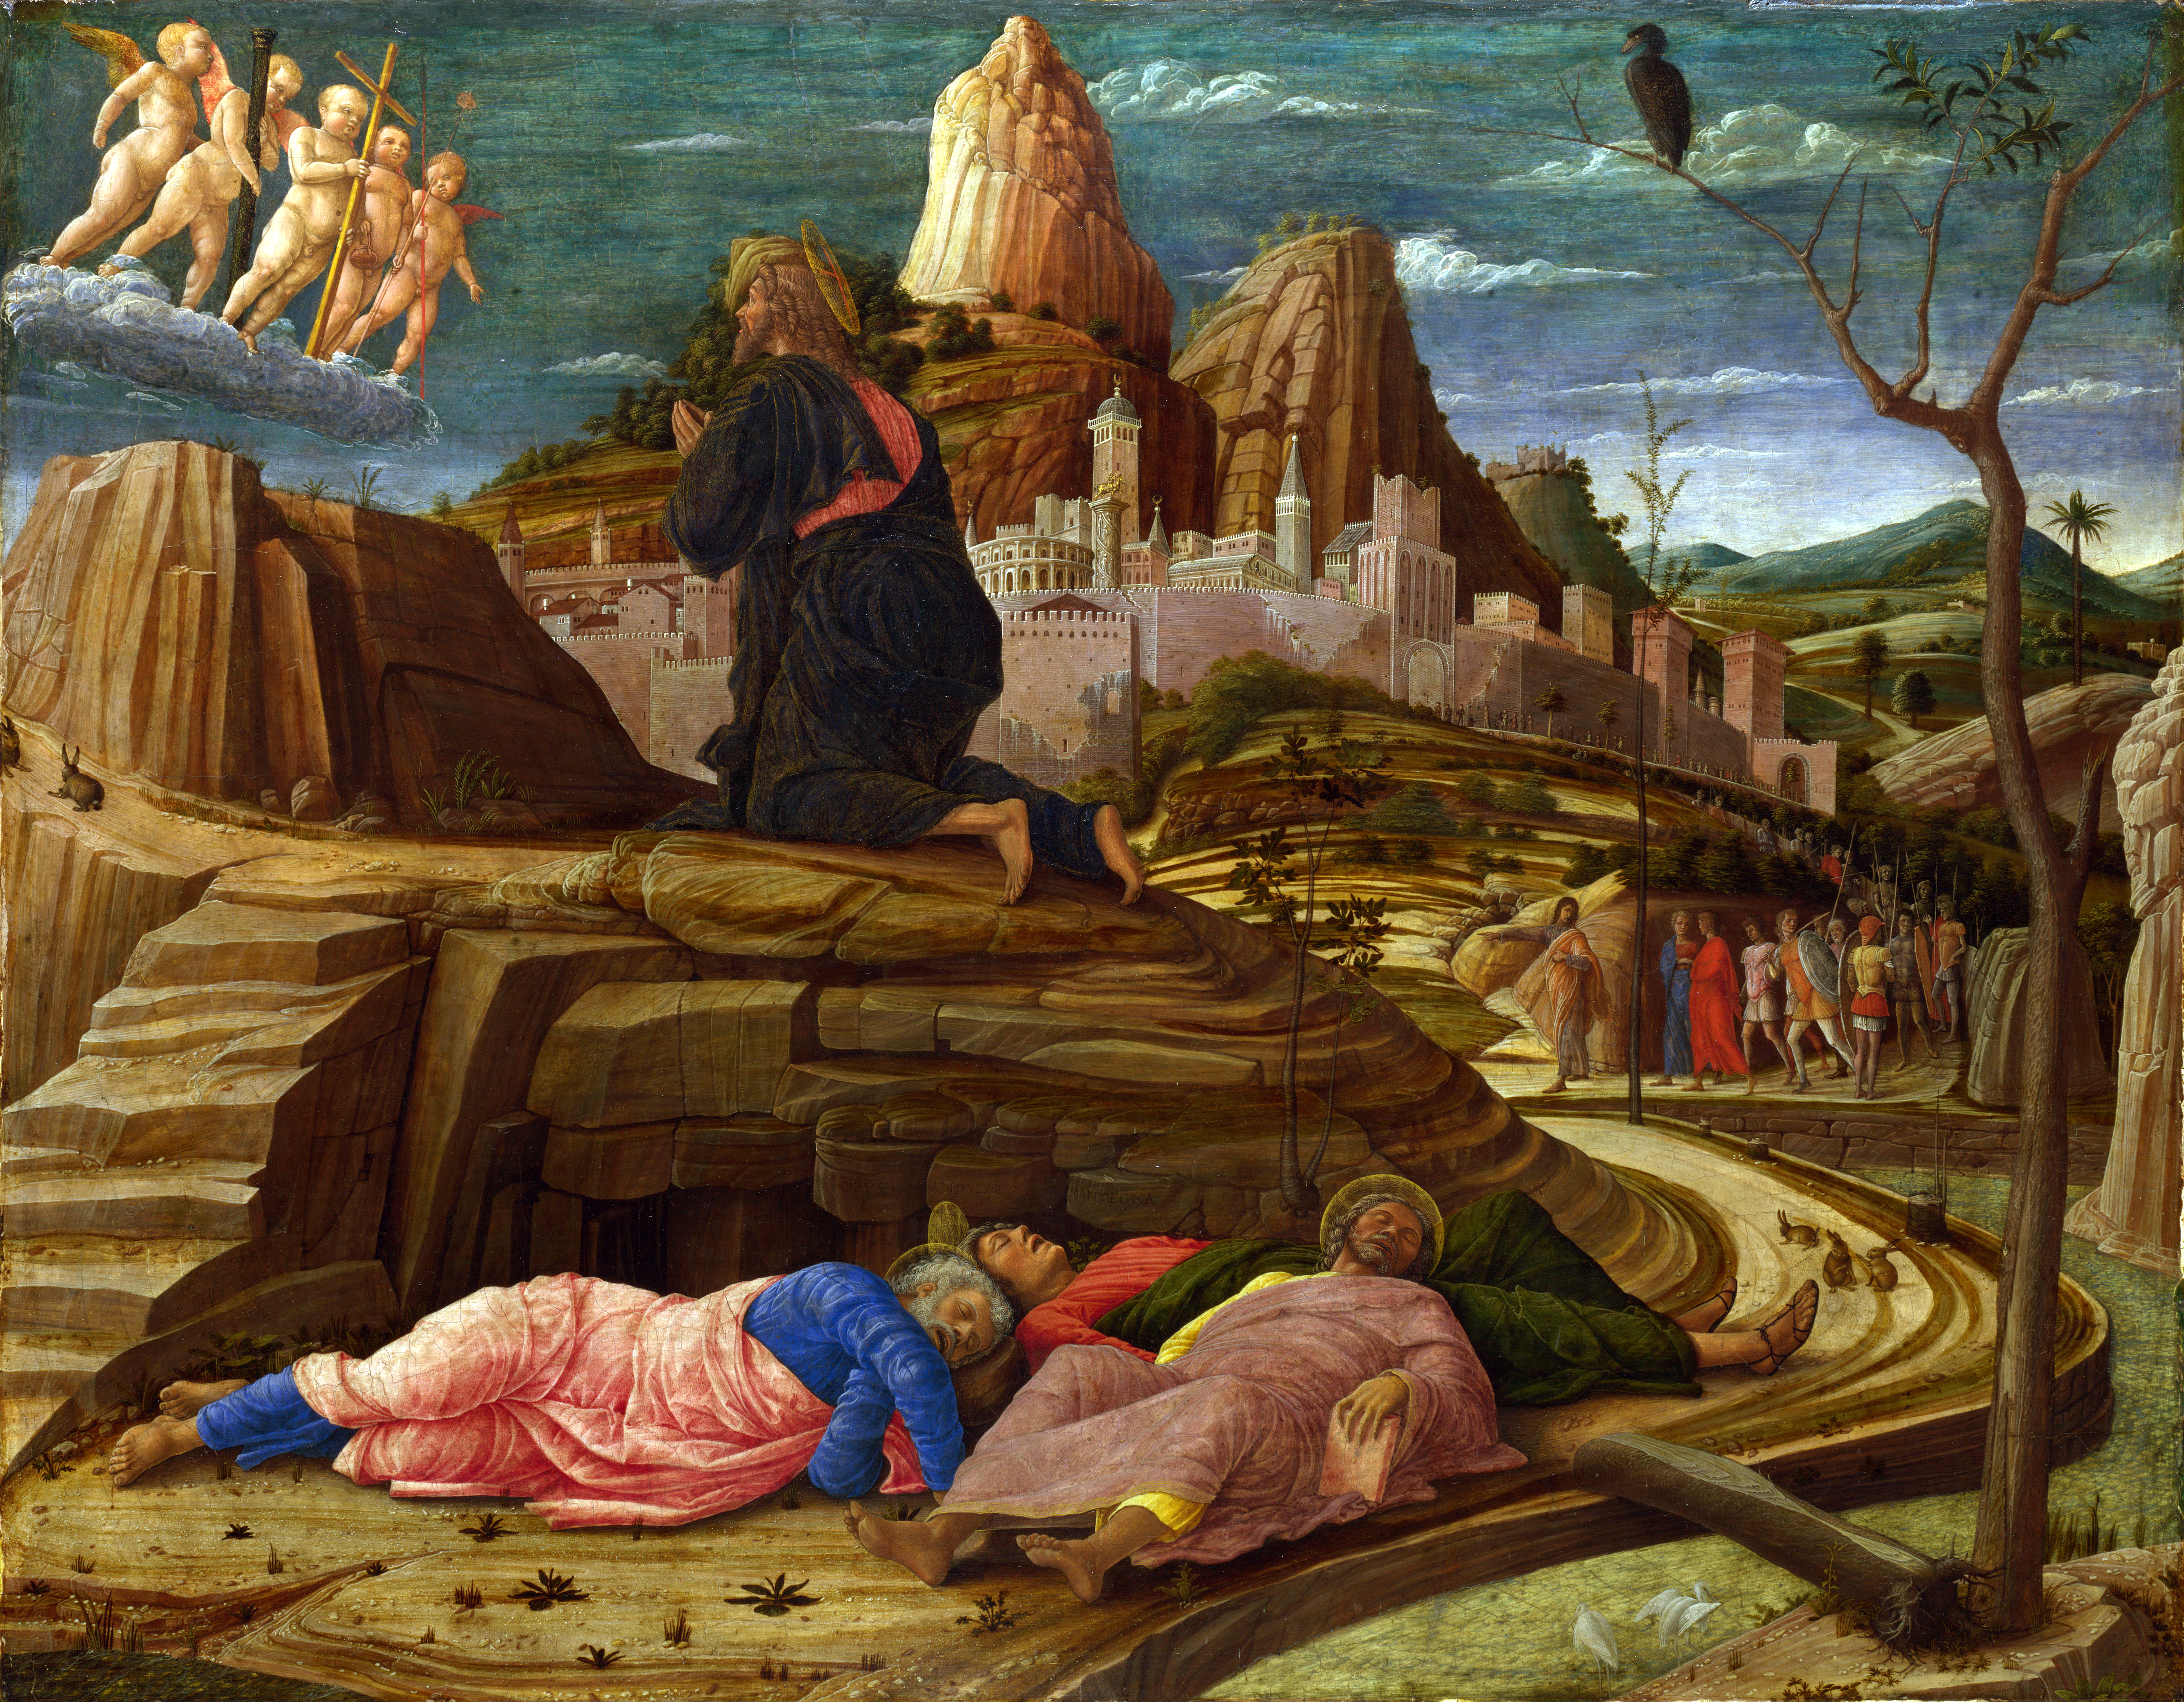 ../_images/Andrea_Mantegna1.jpg